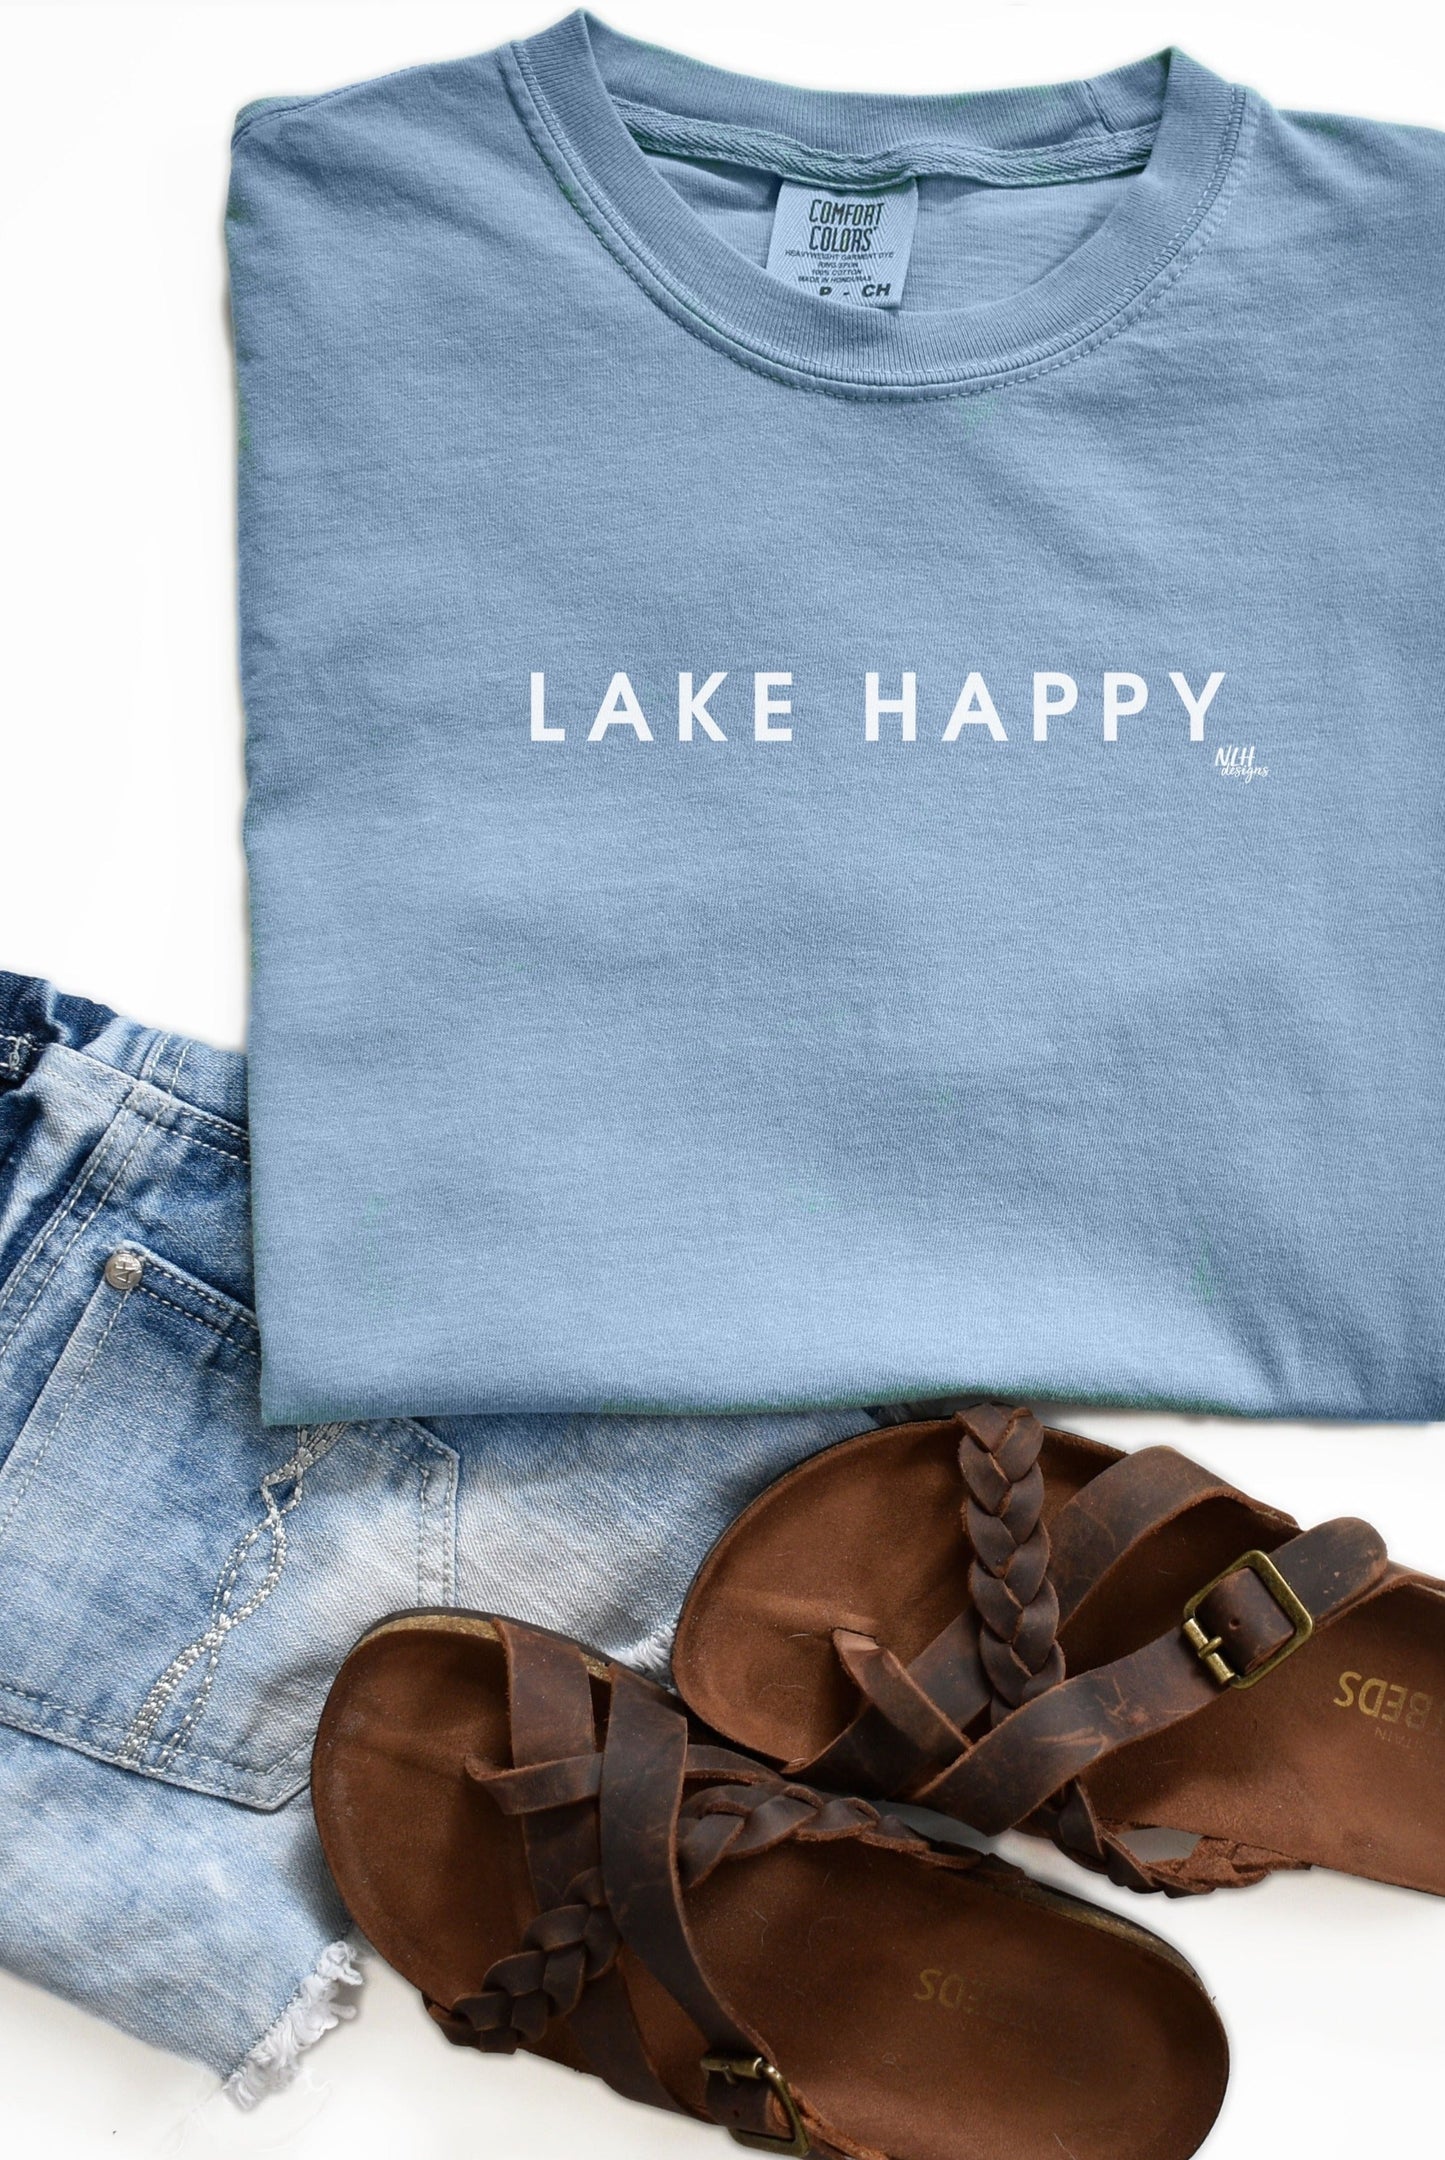 Inspirational Tee - Lake Happy